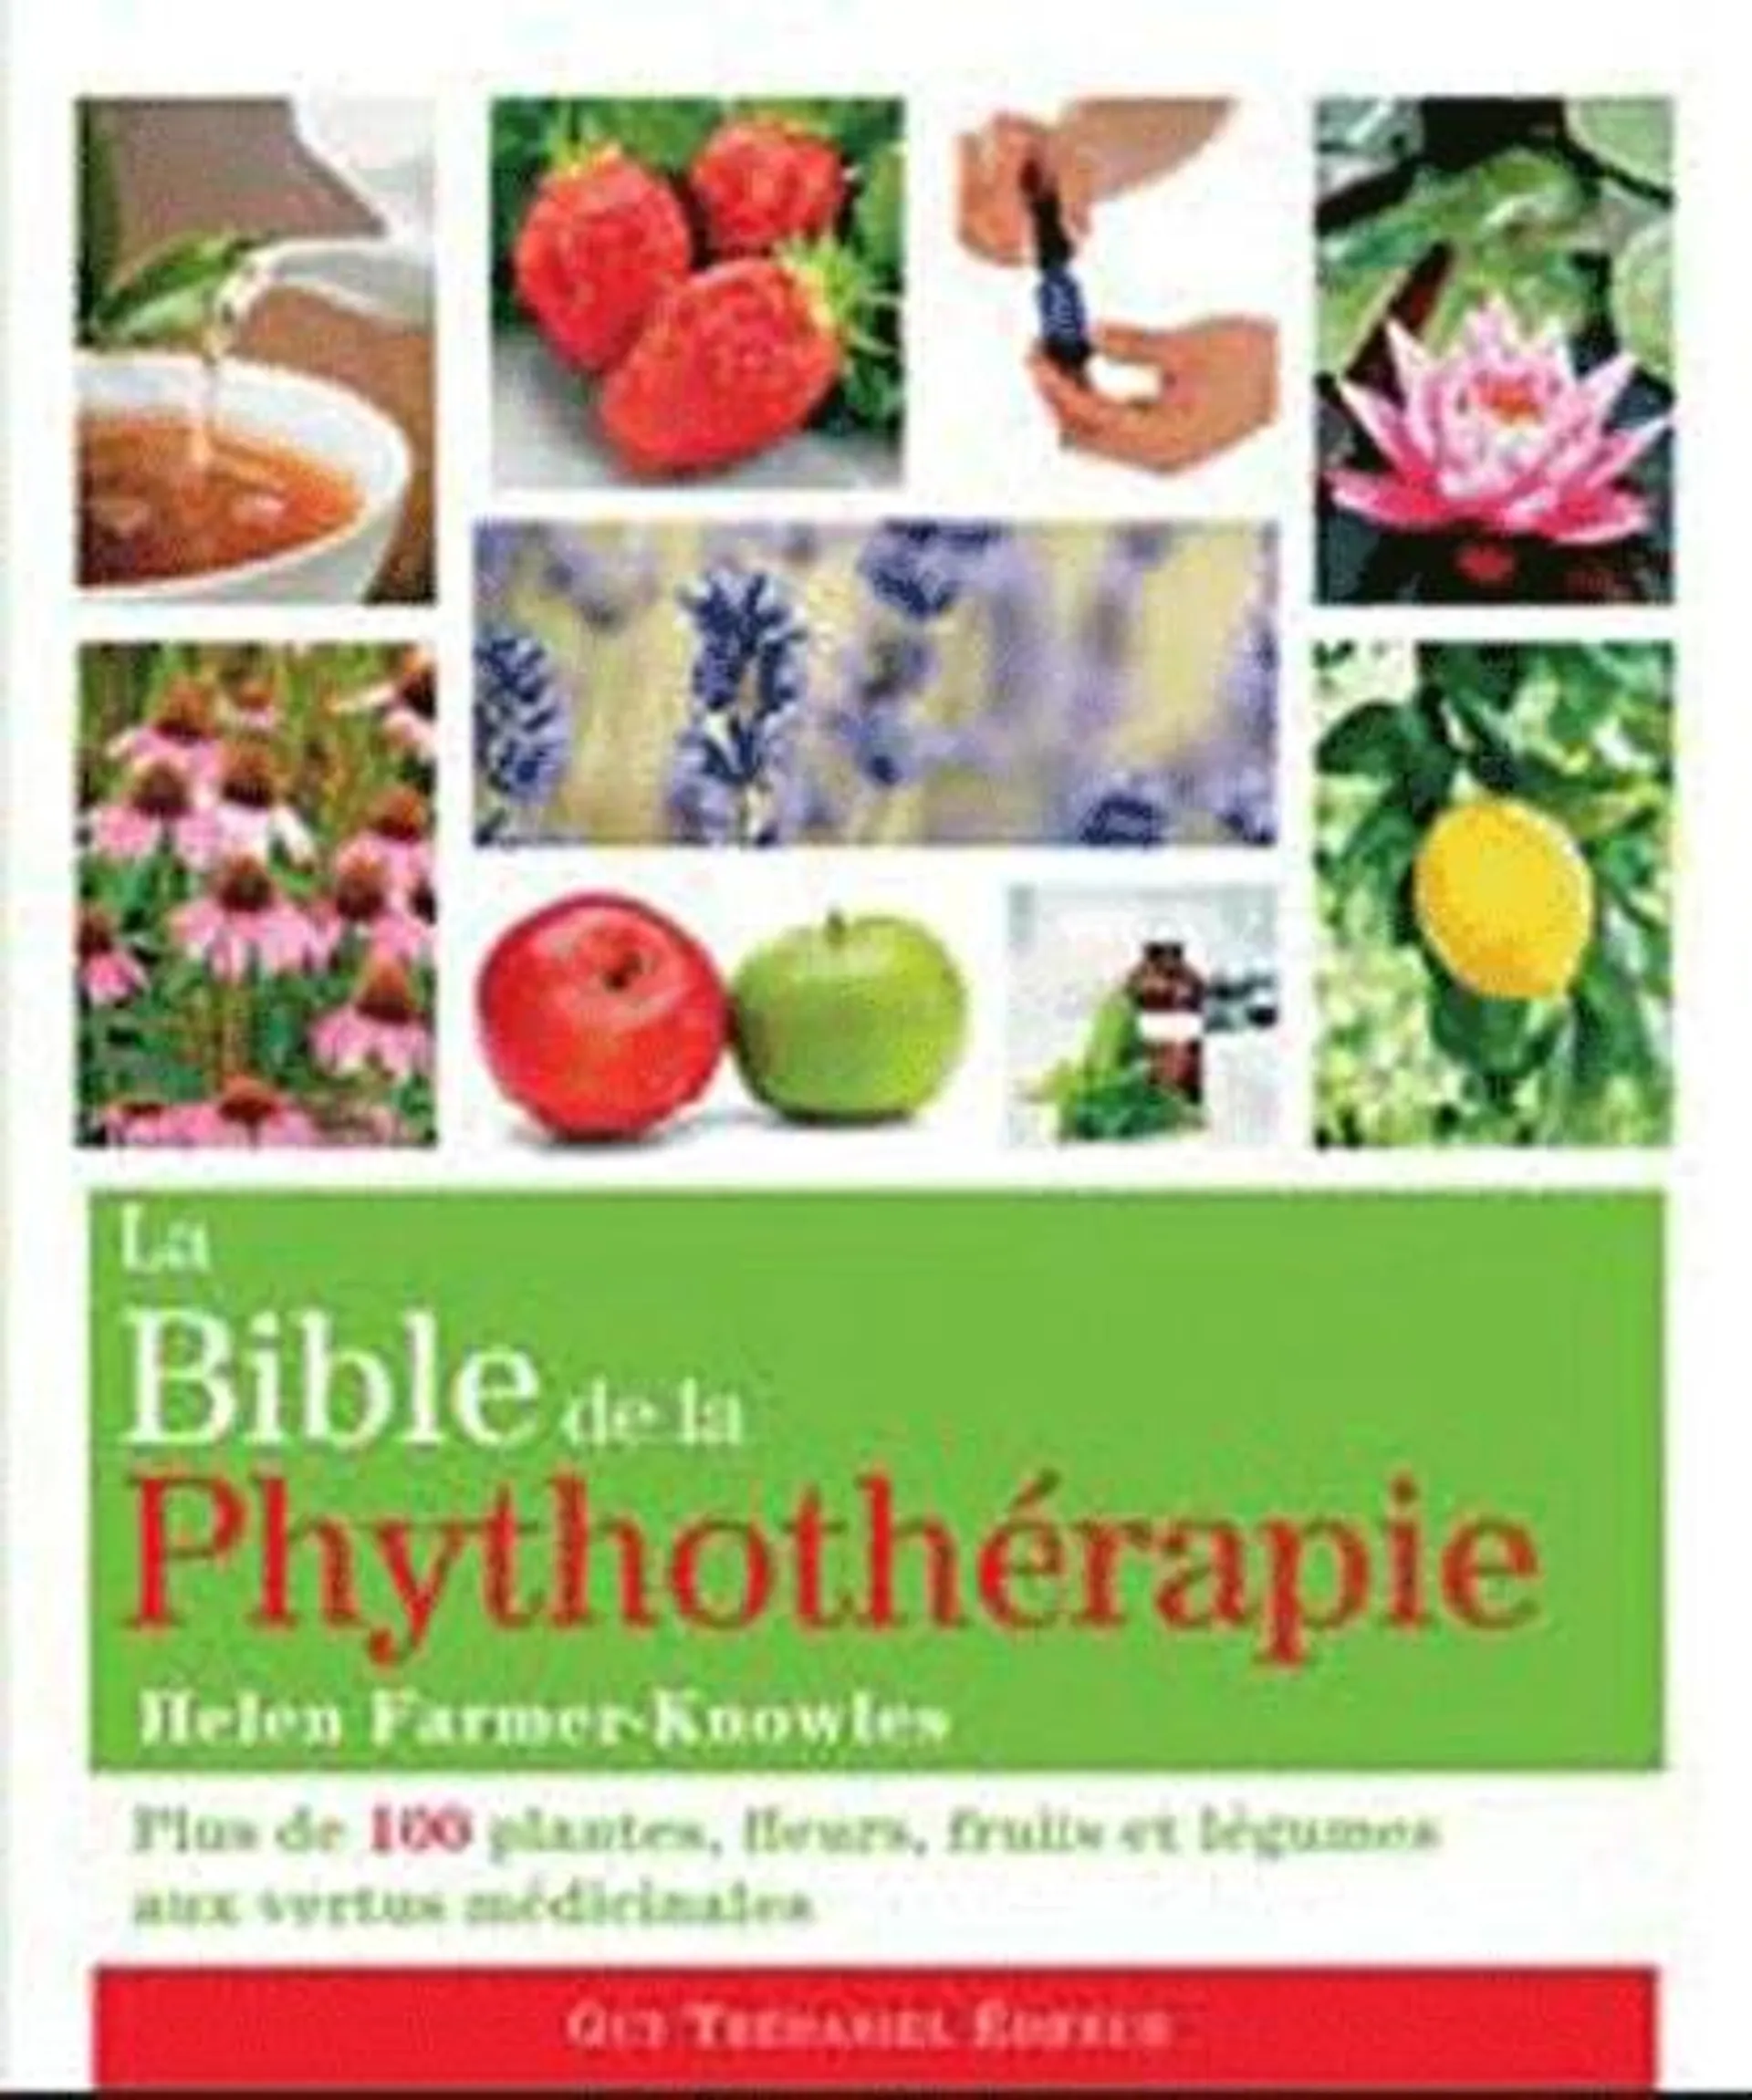 La bible de la phytothérapie - Plus de 100 plantes, fleurs, fruits et légumes aux vertus médicinales - Grand Format